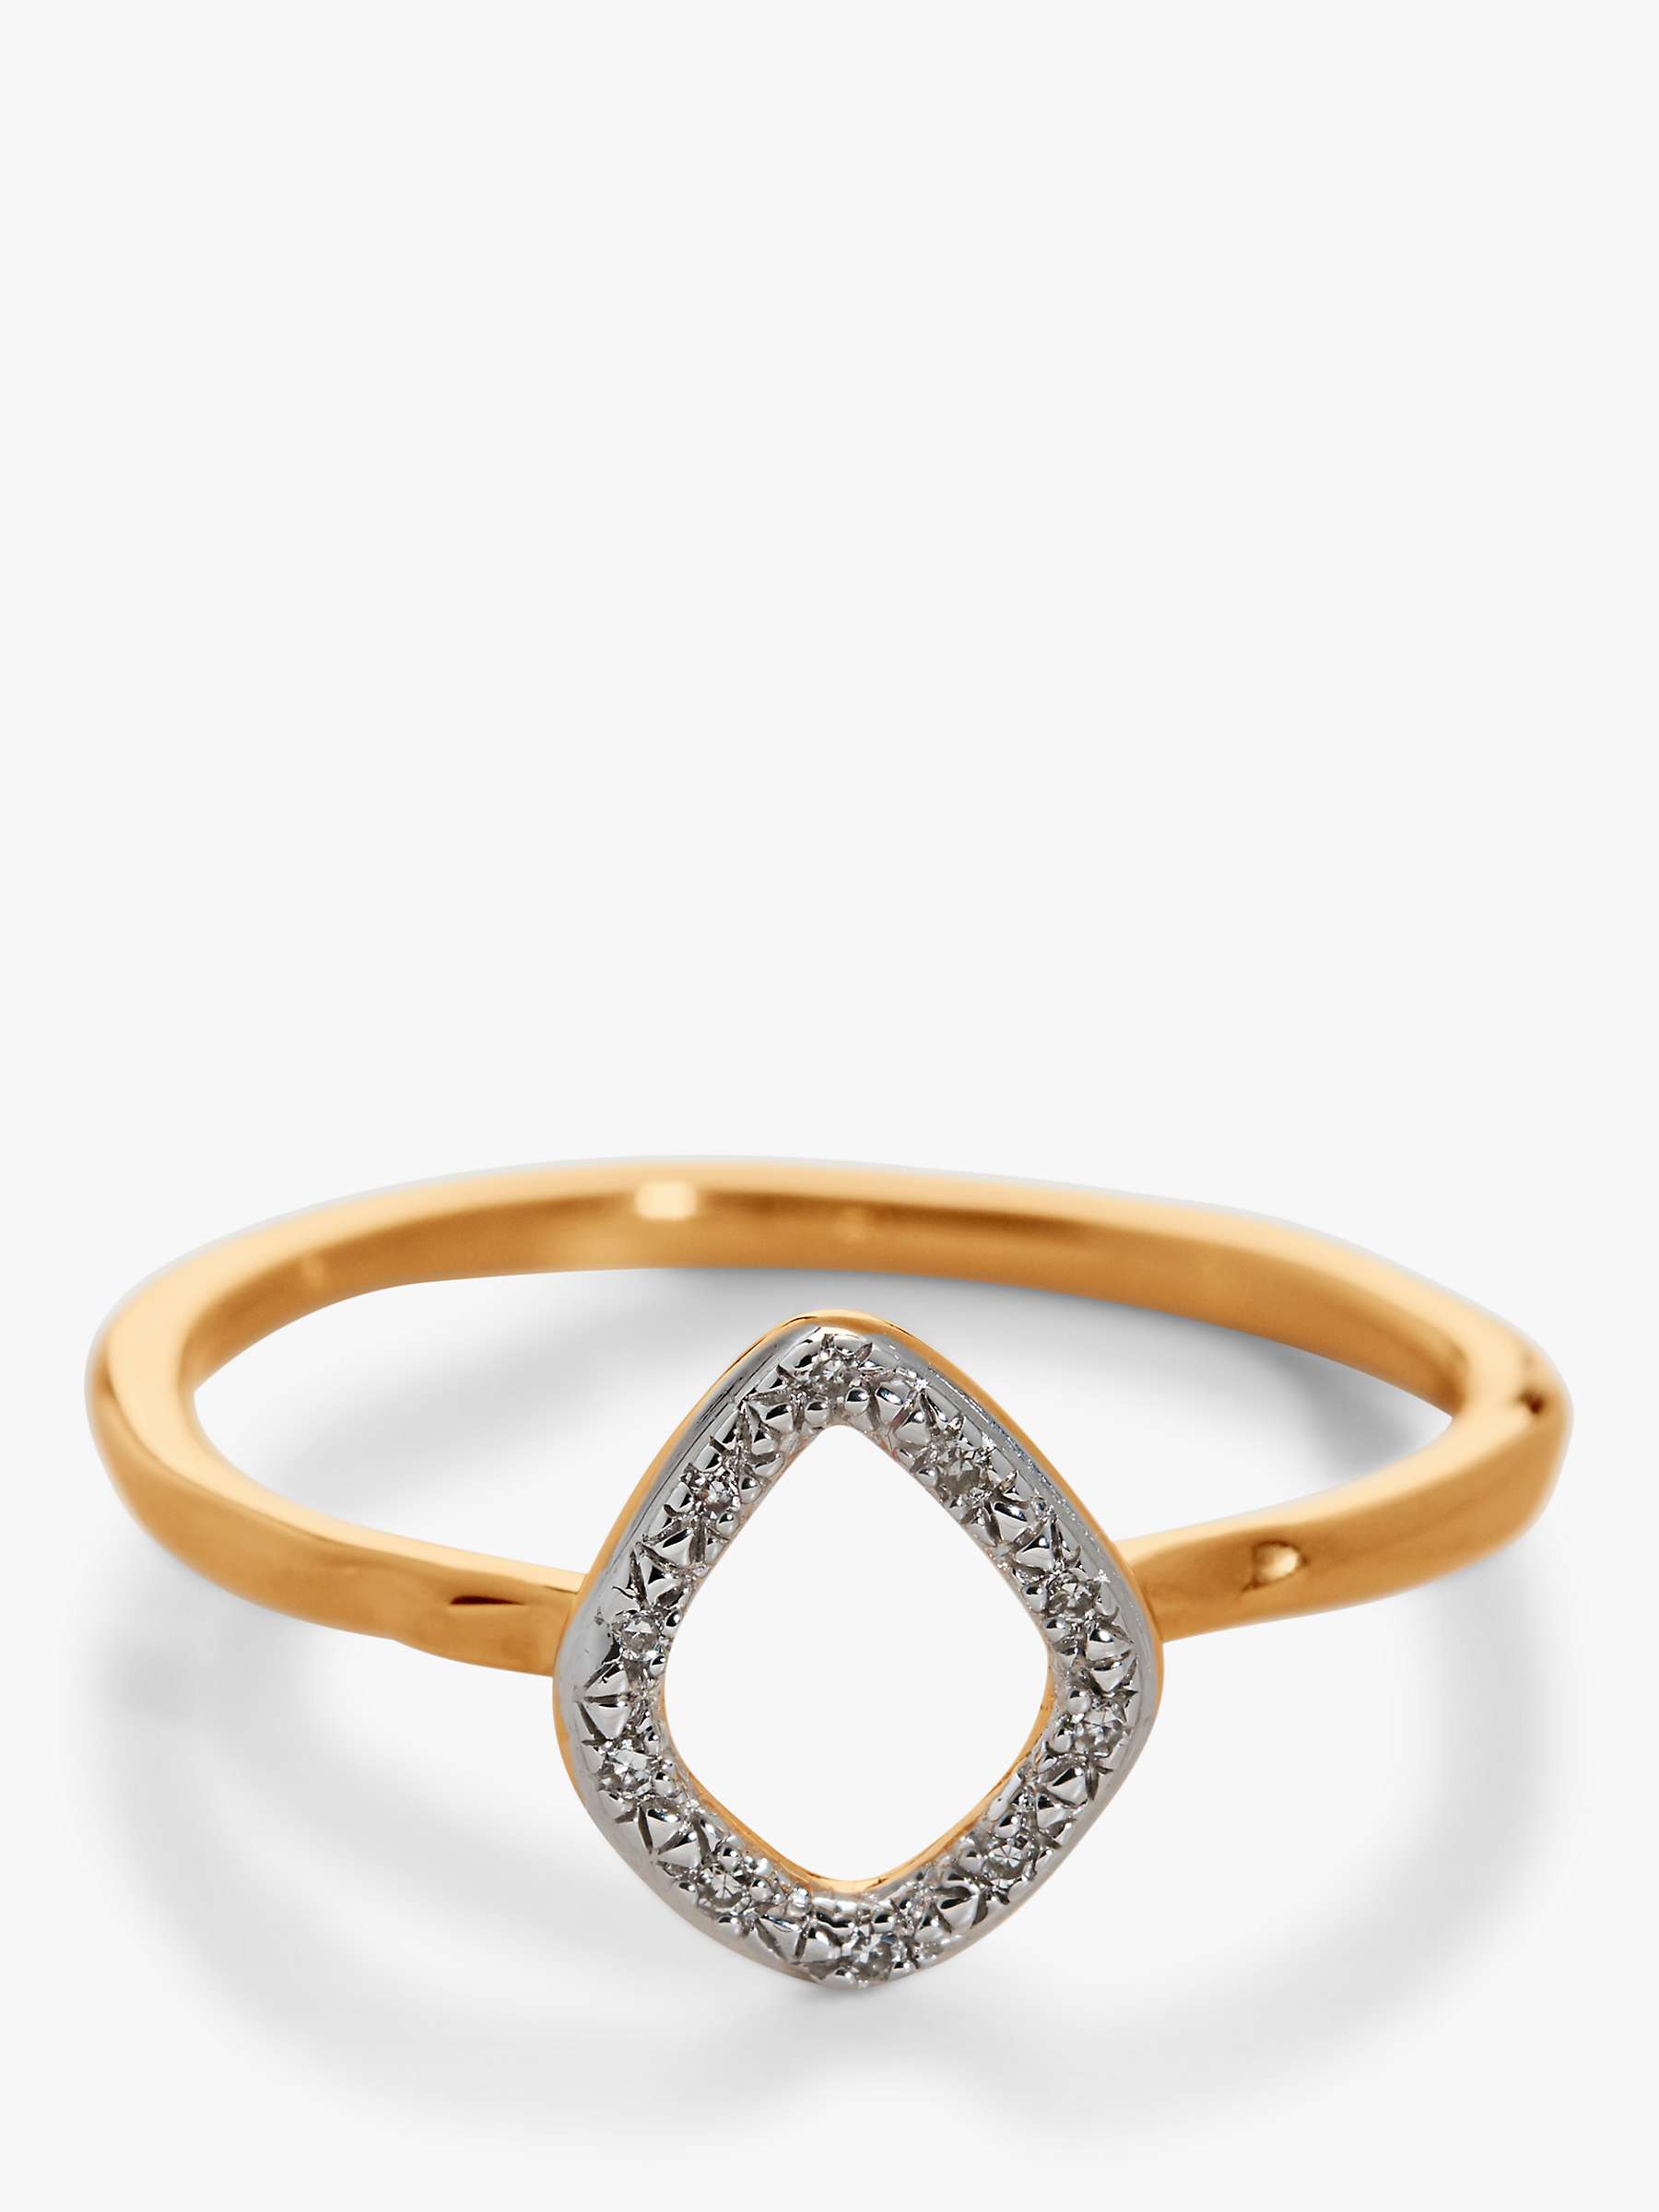 Buy Monica Vinader Riva Mini Diamond Ring, Gold Online at johnlewis.com